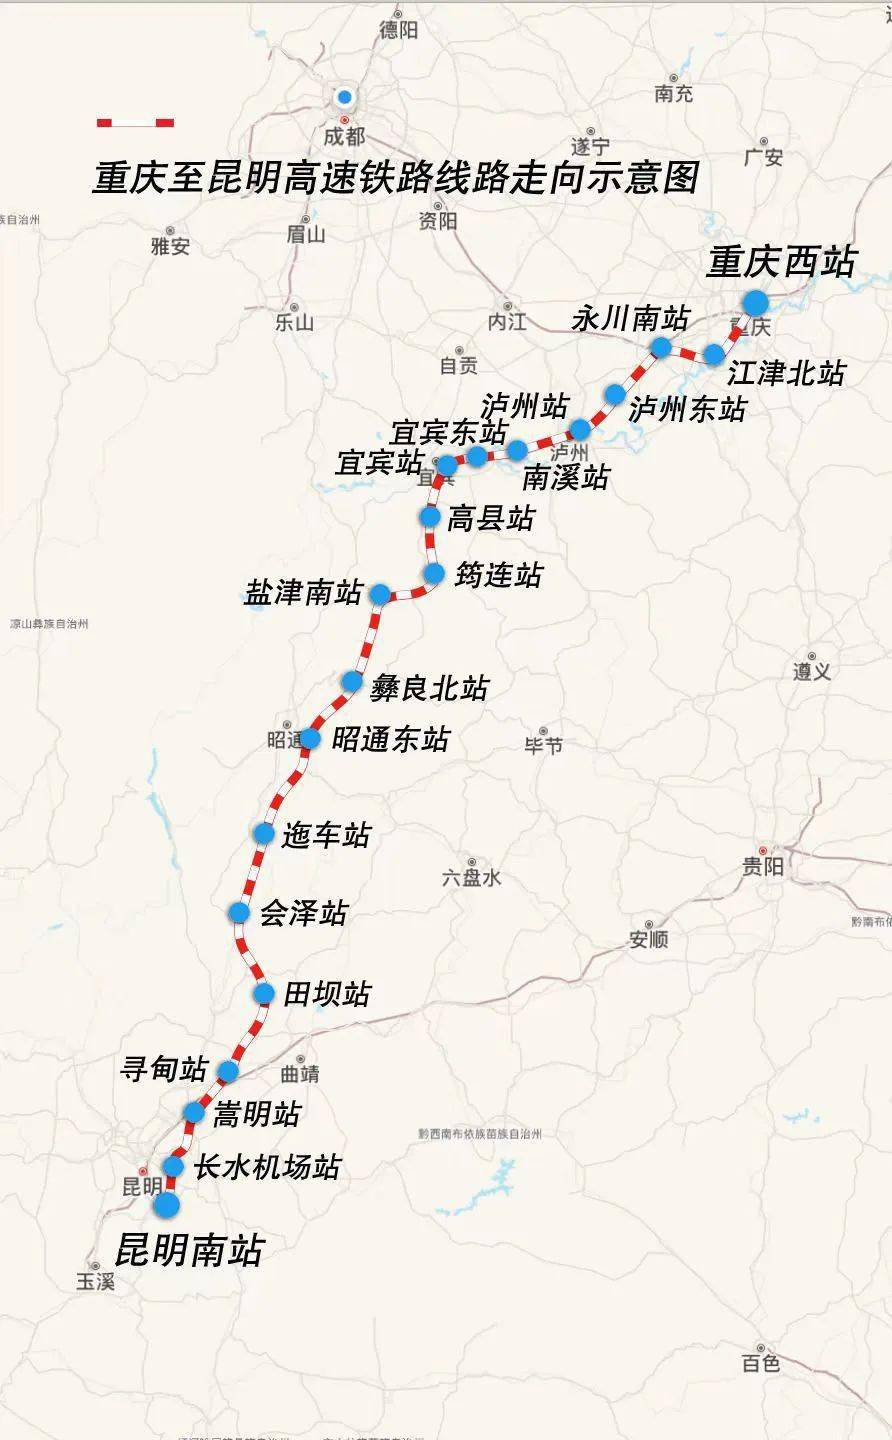 渝昆高铁传来新进展,昭通至昆明段力争2025年通车